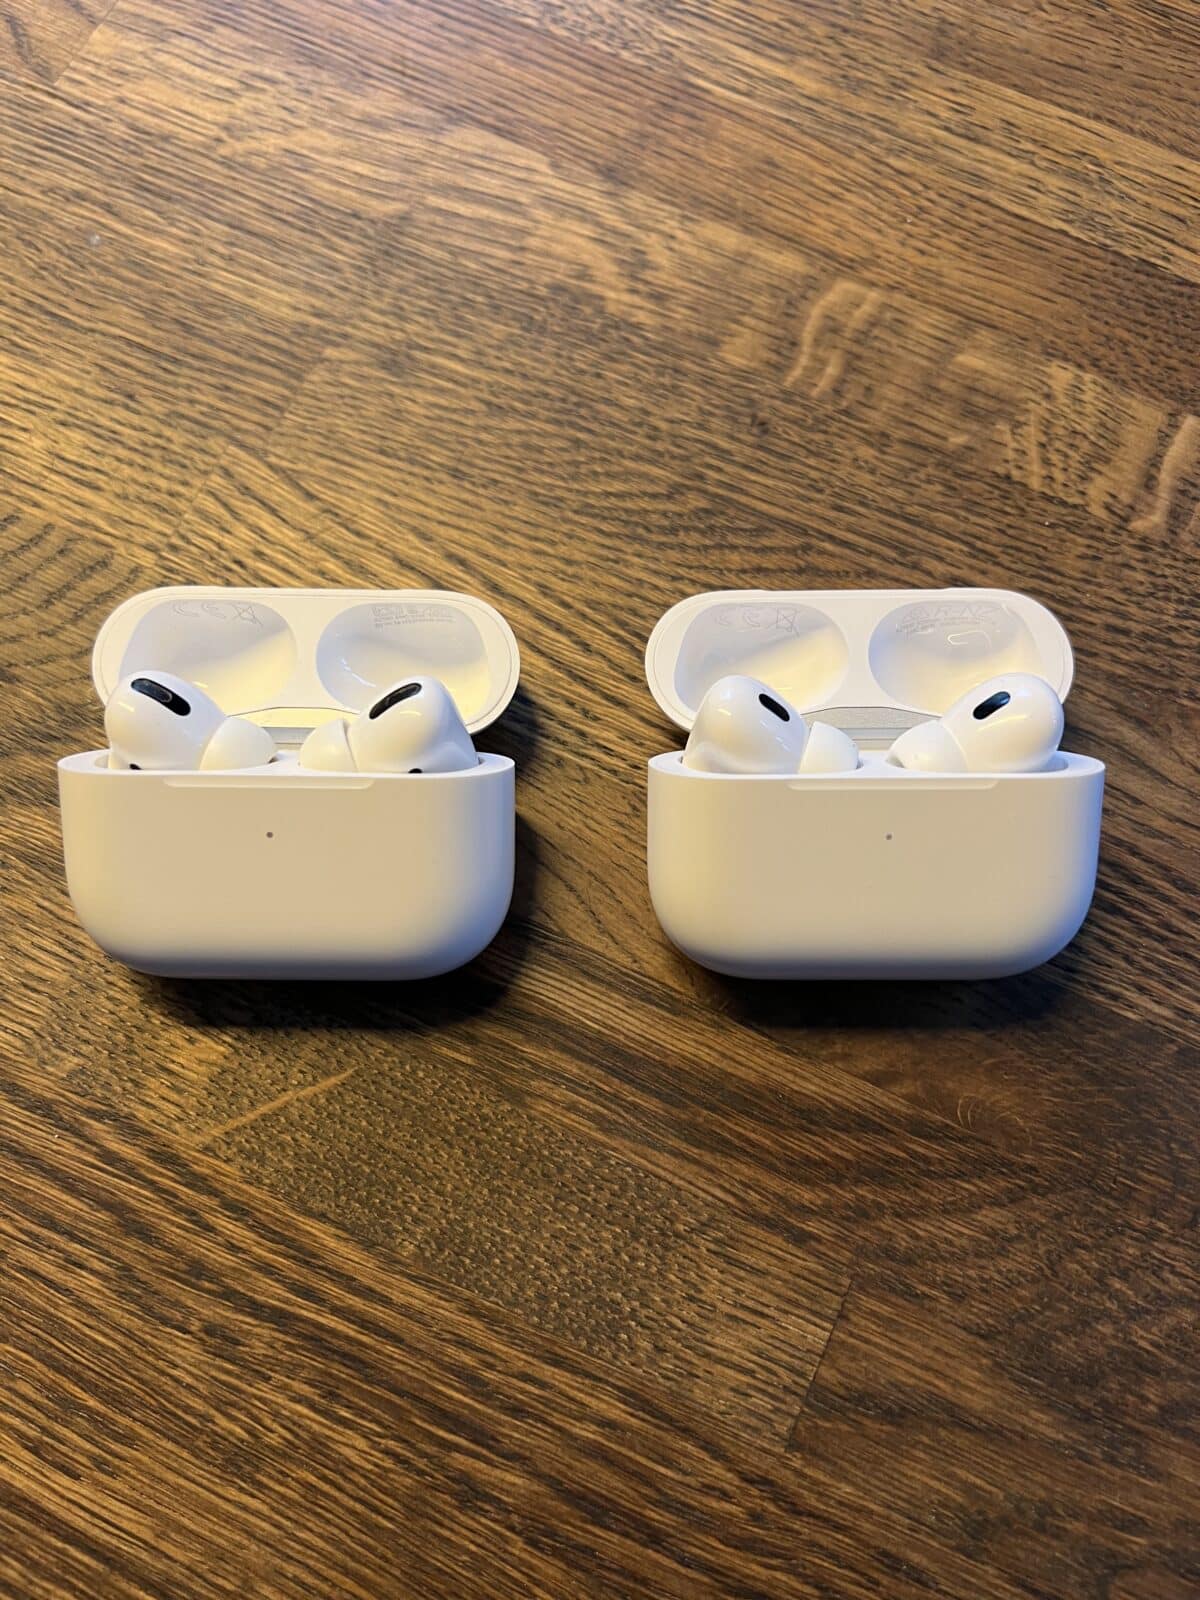 Apple Airpods Gen 1 and Gen 2